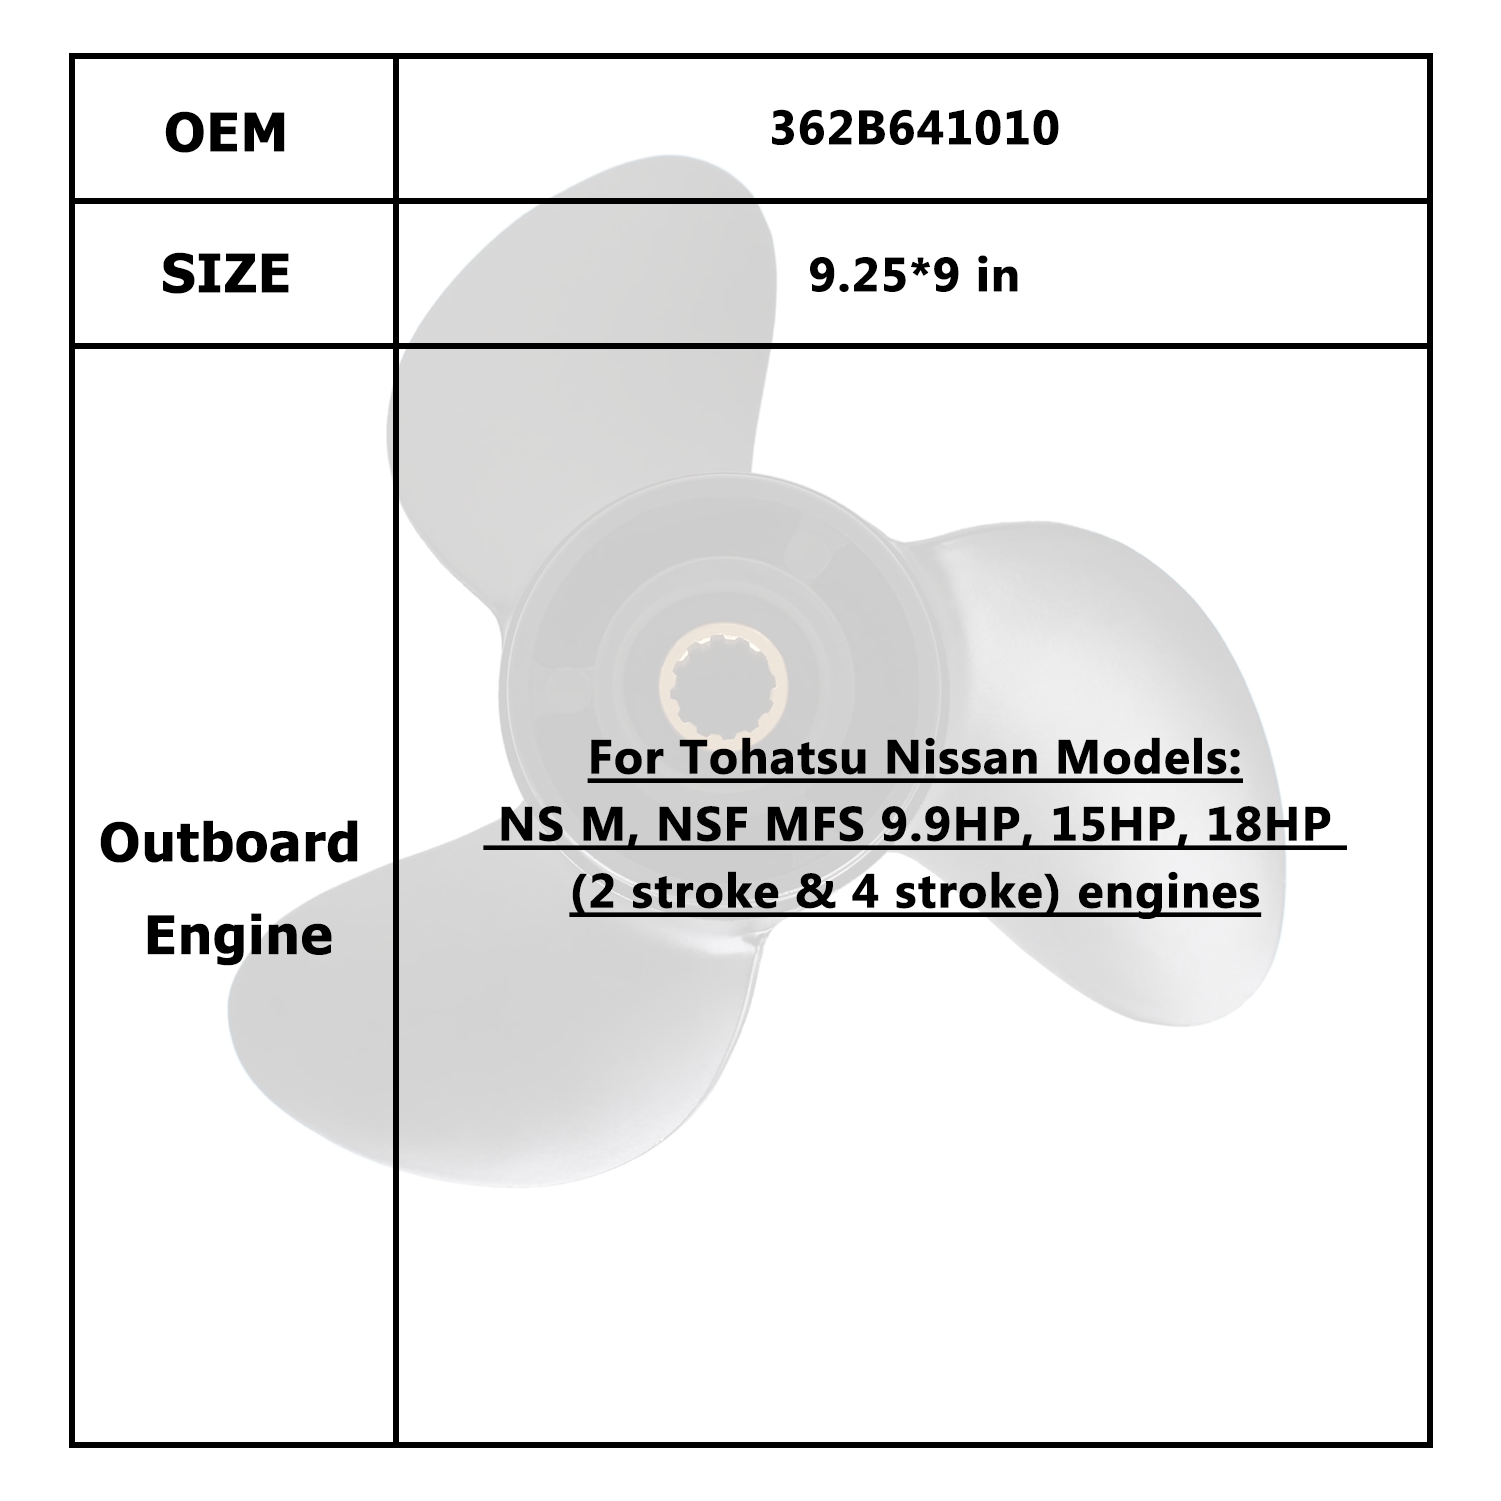 Hélice de Motor de barco para Tohatsu Nissan 9,9-18HP 362B641010 3BAB645241